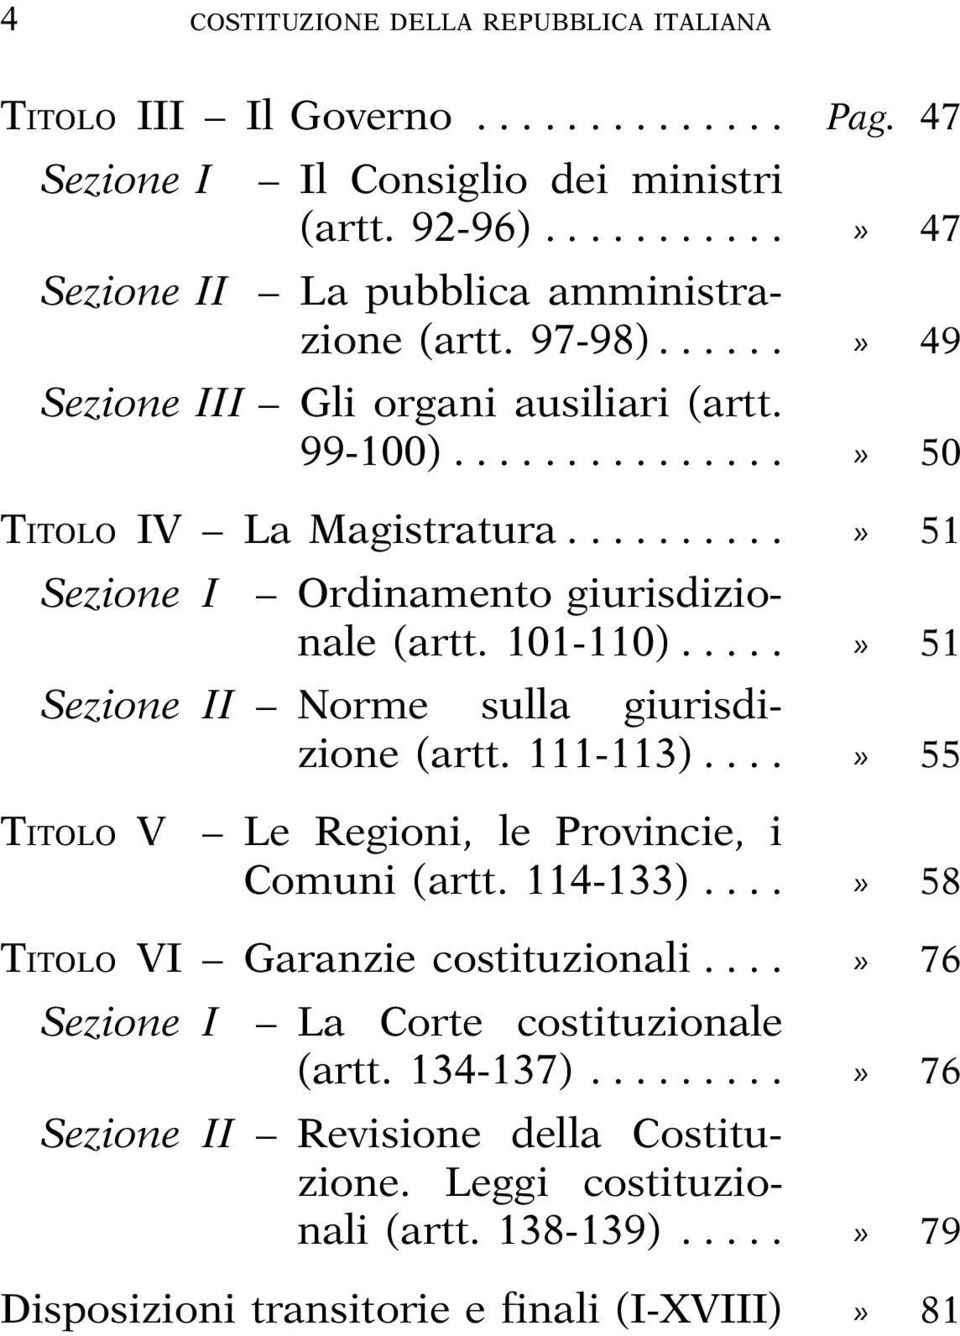 ....» 51 Sezione II Norme sulla giurisdizione (artt. 111-113)....» 55 TITOLO VI Le Regioni, le Provincie, i Comuni (artt. 114-133)....» 58 TITOLO VI Garanzie costituzionali.